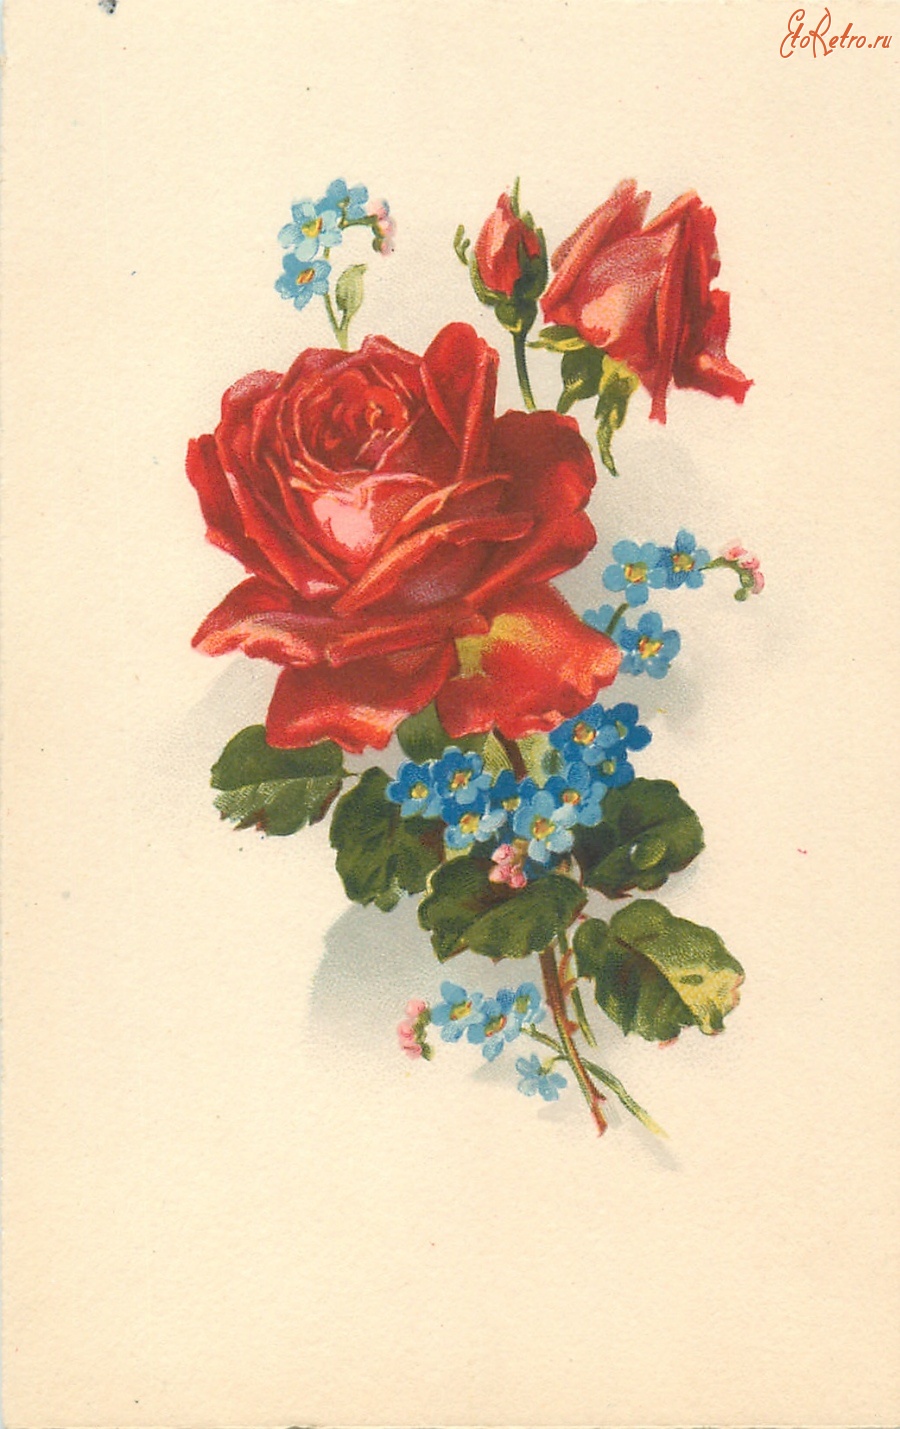 Ретро открытки - Красные розы с бутонами и незабудки